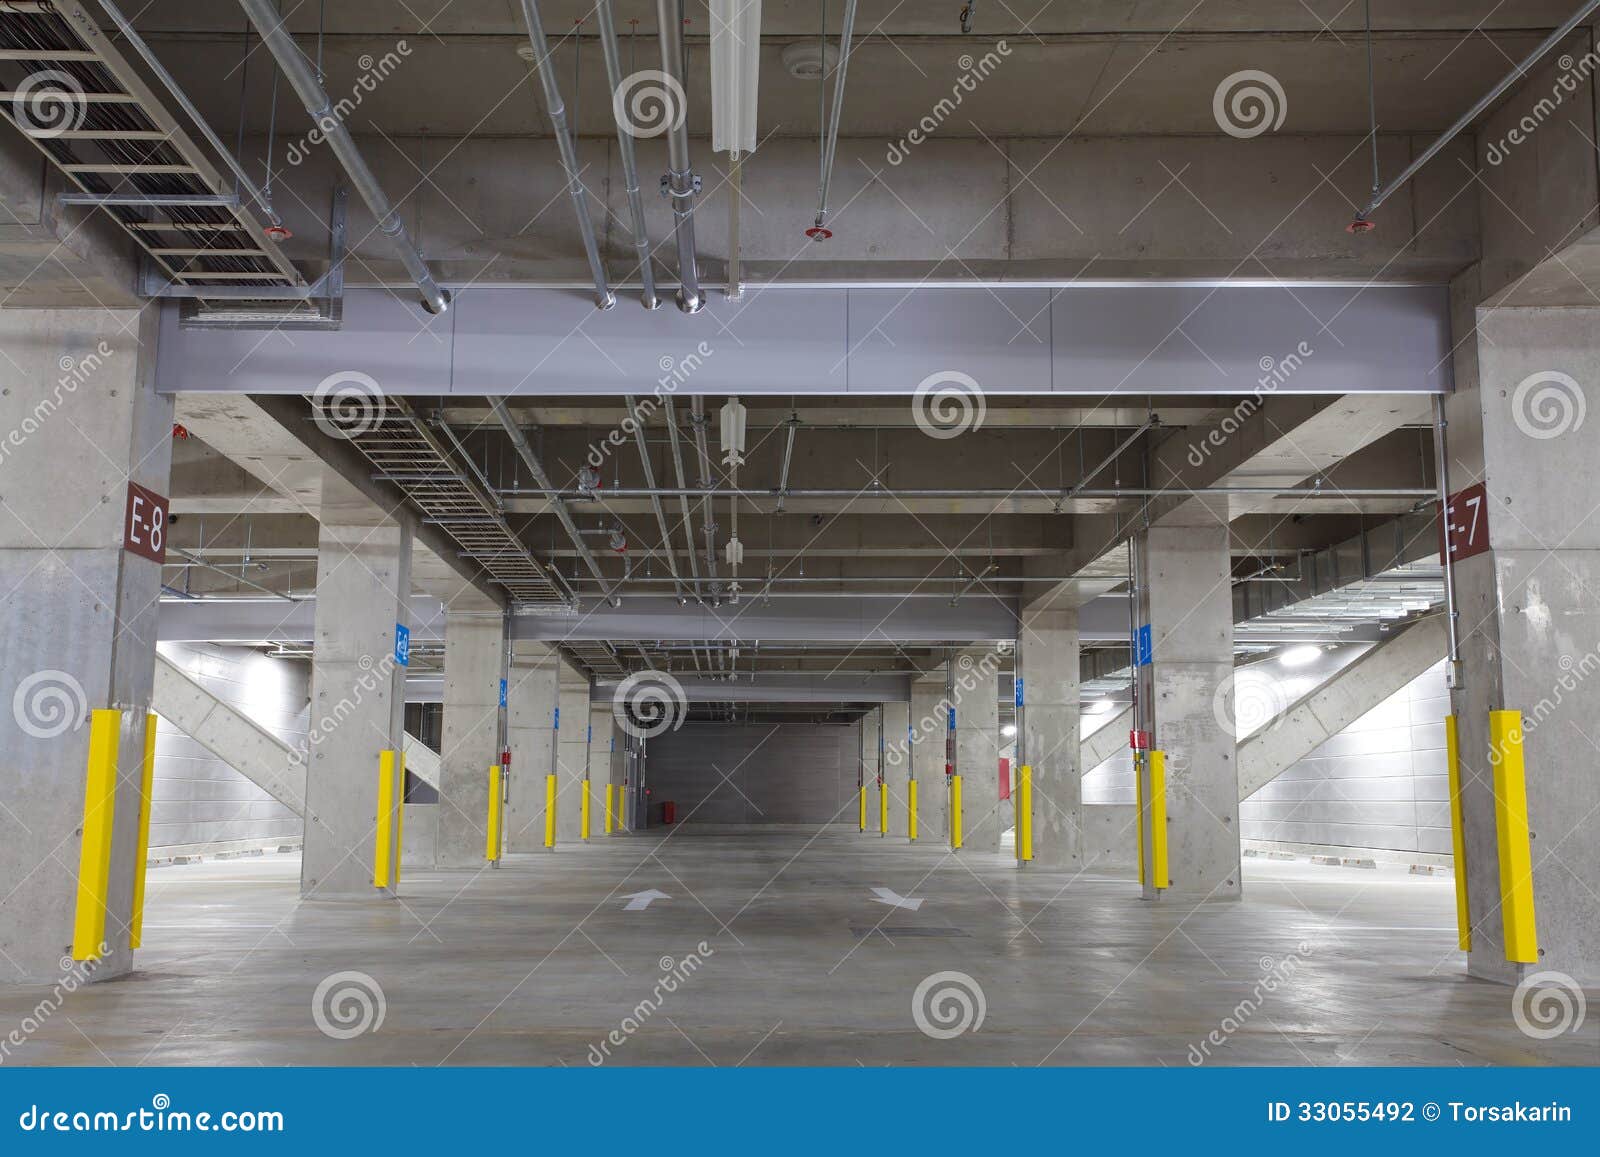  Parking  souterrain  photo stock Image du achat 